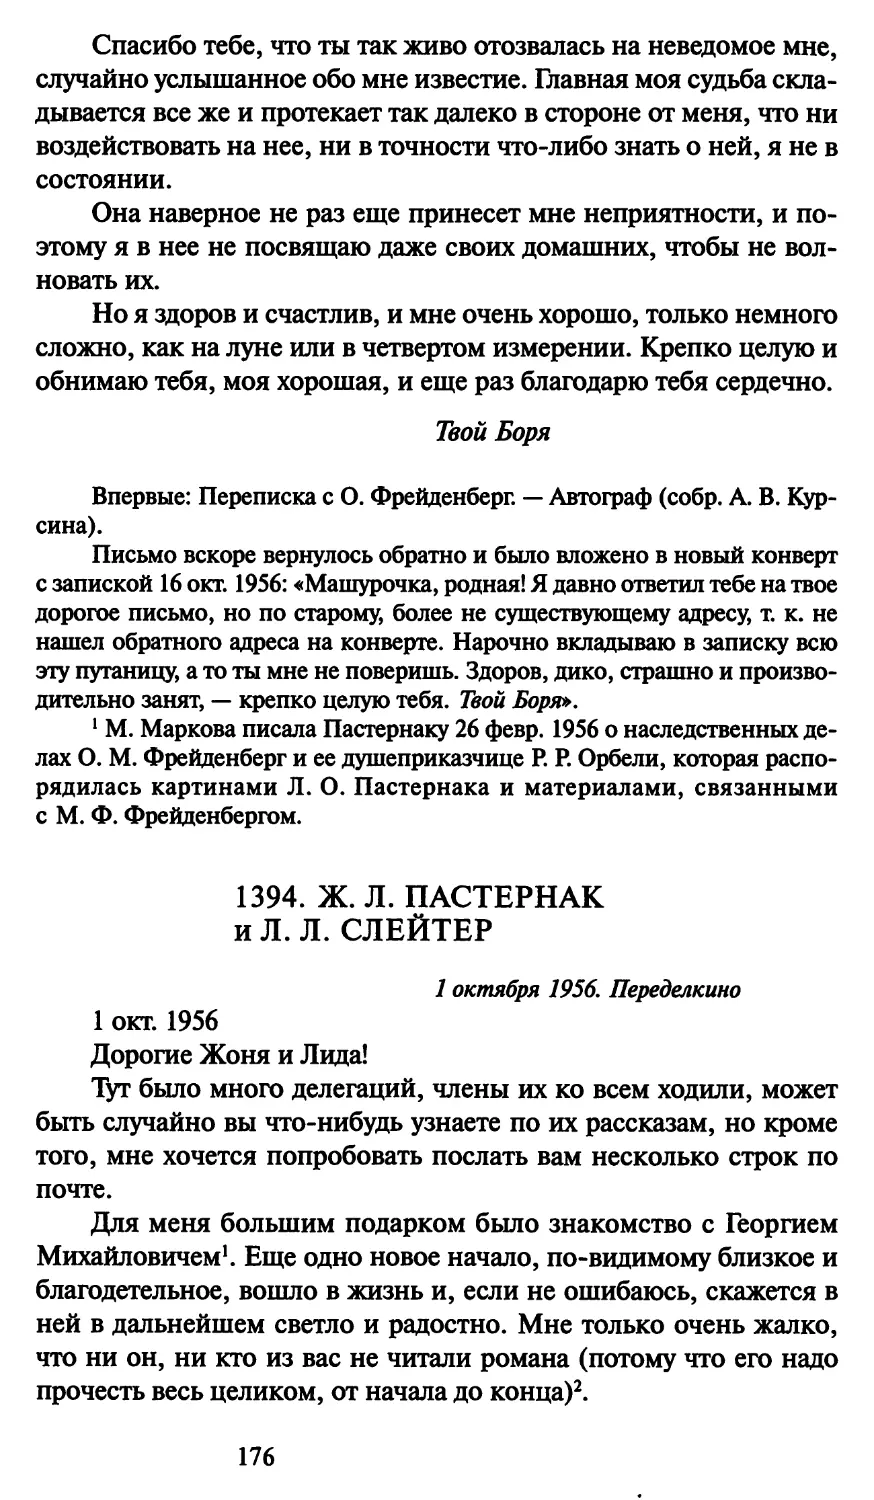 1394. Ж. Л. Пастернак и Л. Л. Слейтер 1 октября 1956